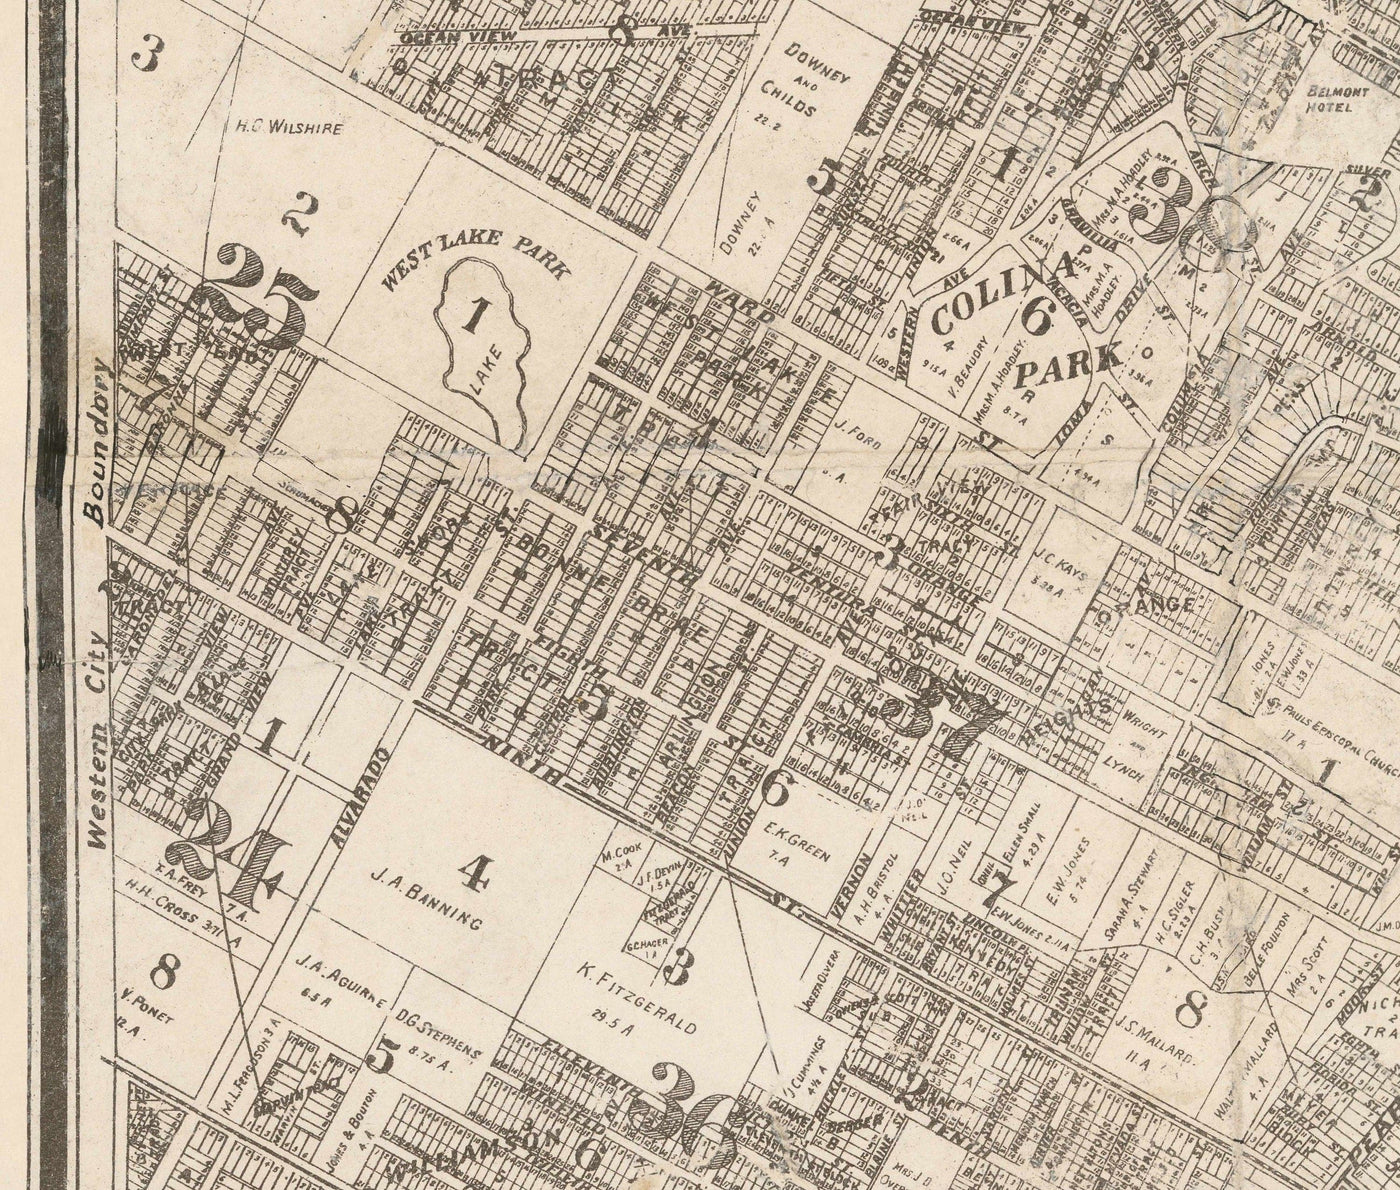 Alte Karte von Los Angeles, 1887 - Seltenes Stadtdiagramm - Downtown, Chinatown, Financial District, Skid Row, Modeviertel